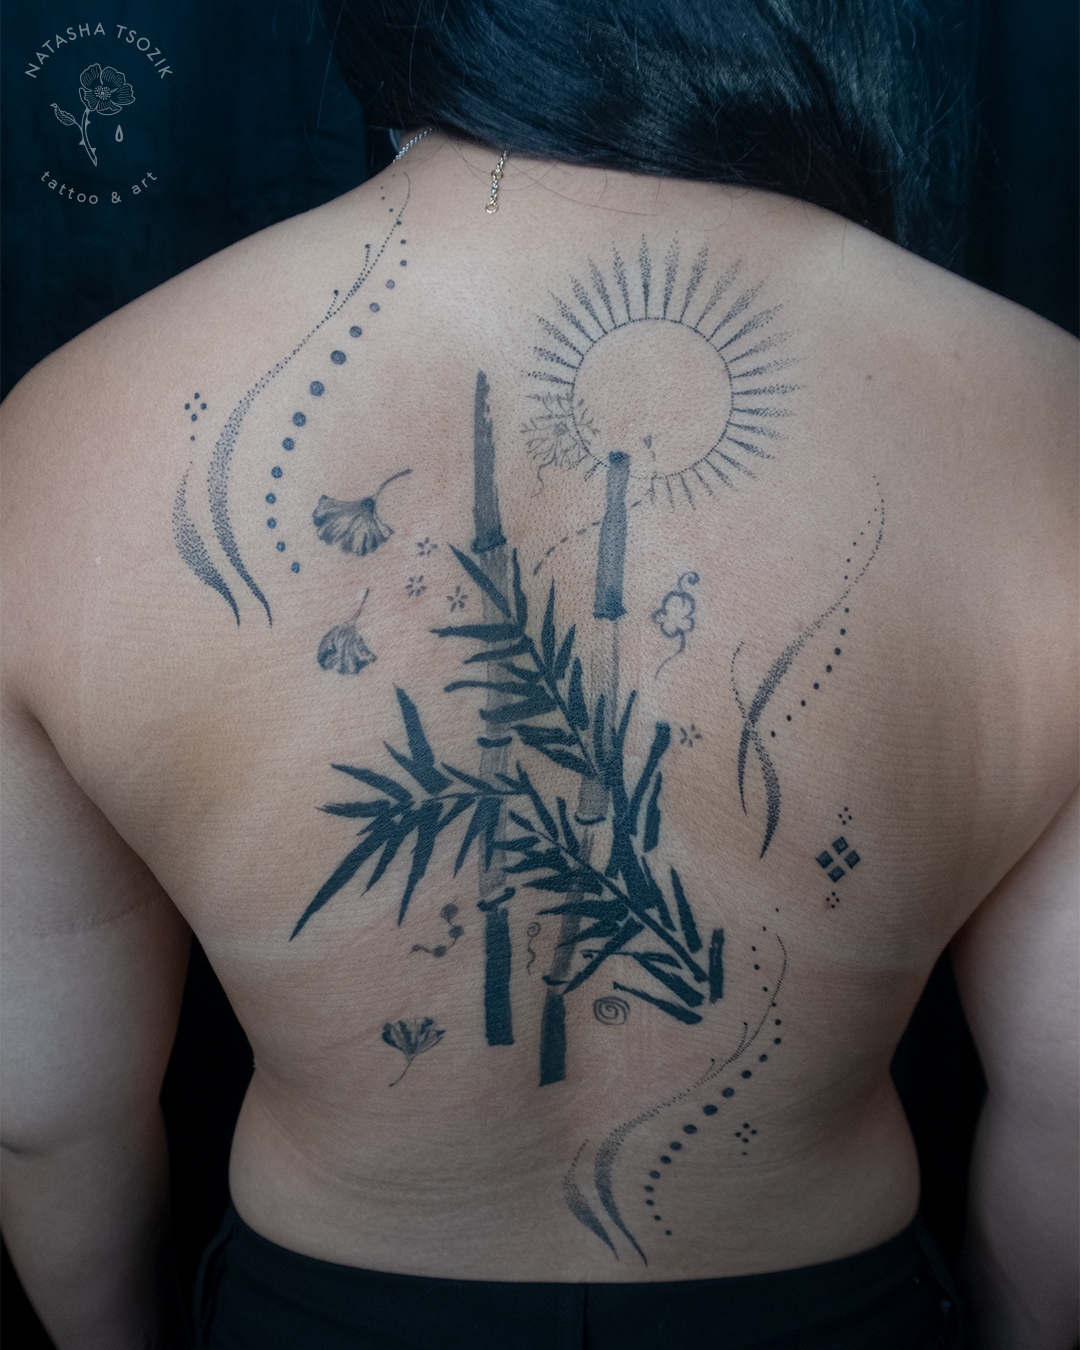 Healed bamboo tattoo on a back.